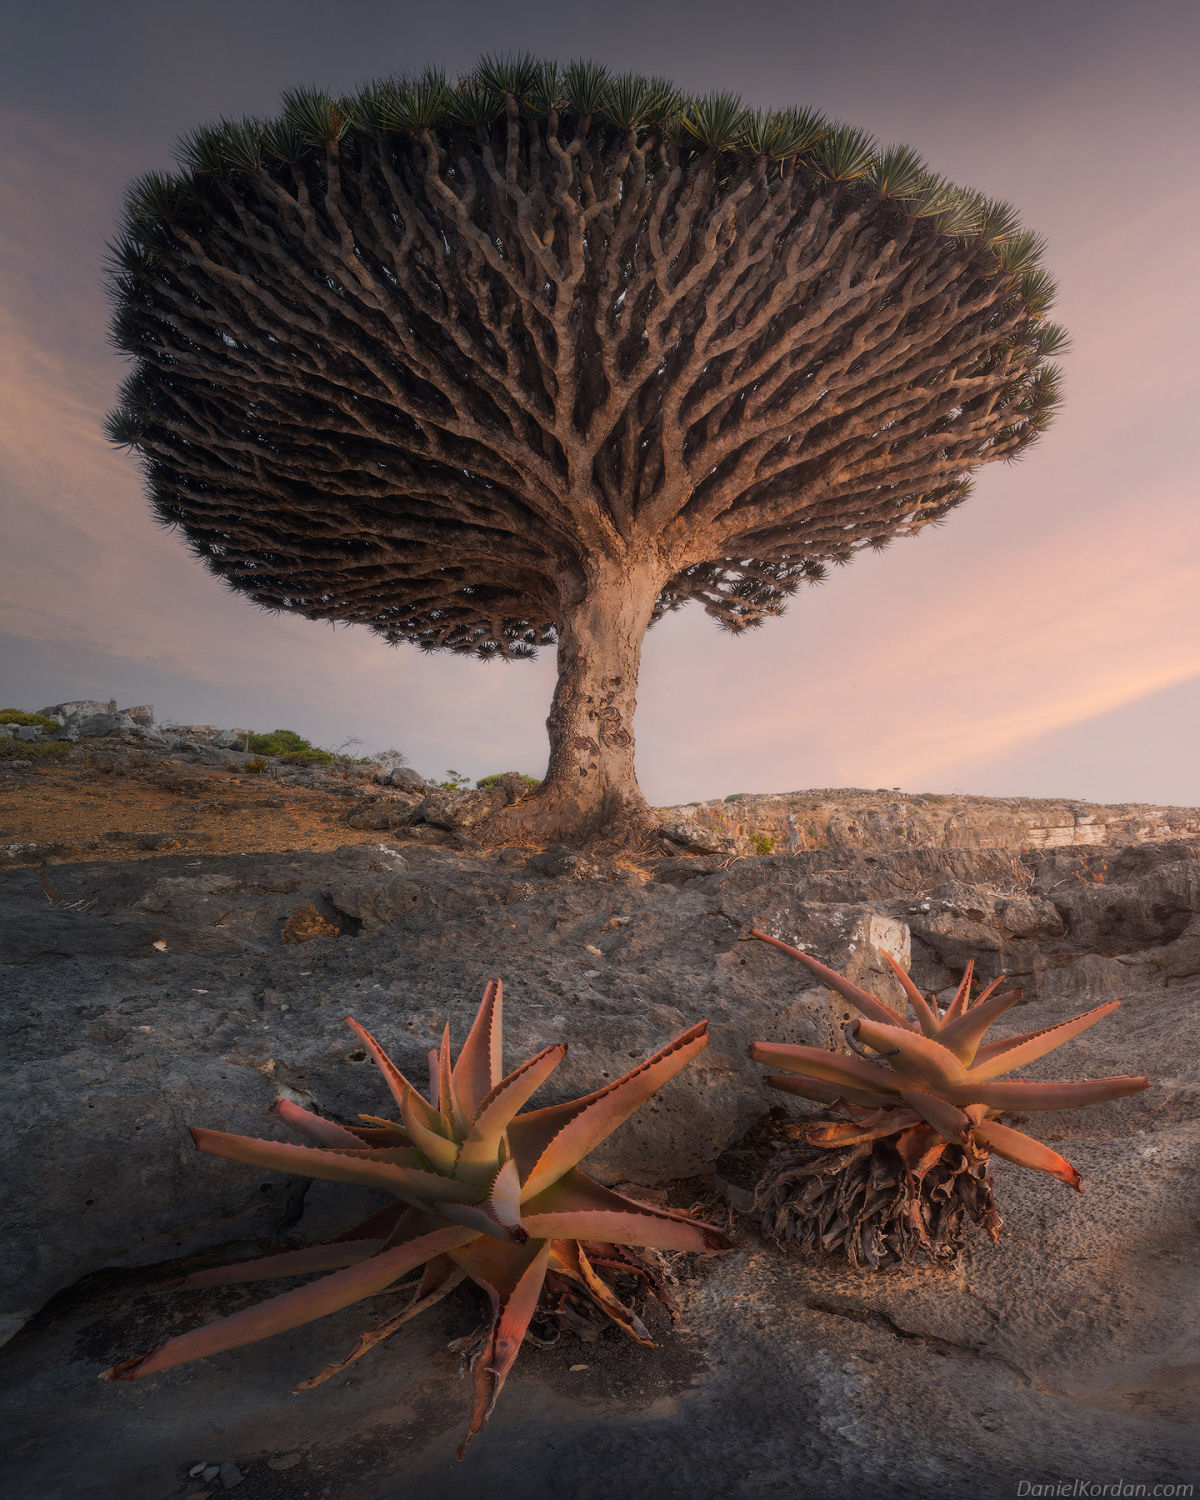 Fotosérie incrível registra os ramos retorcidos dos dragoeiros de Socotra 10